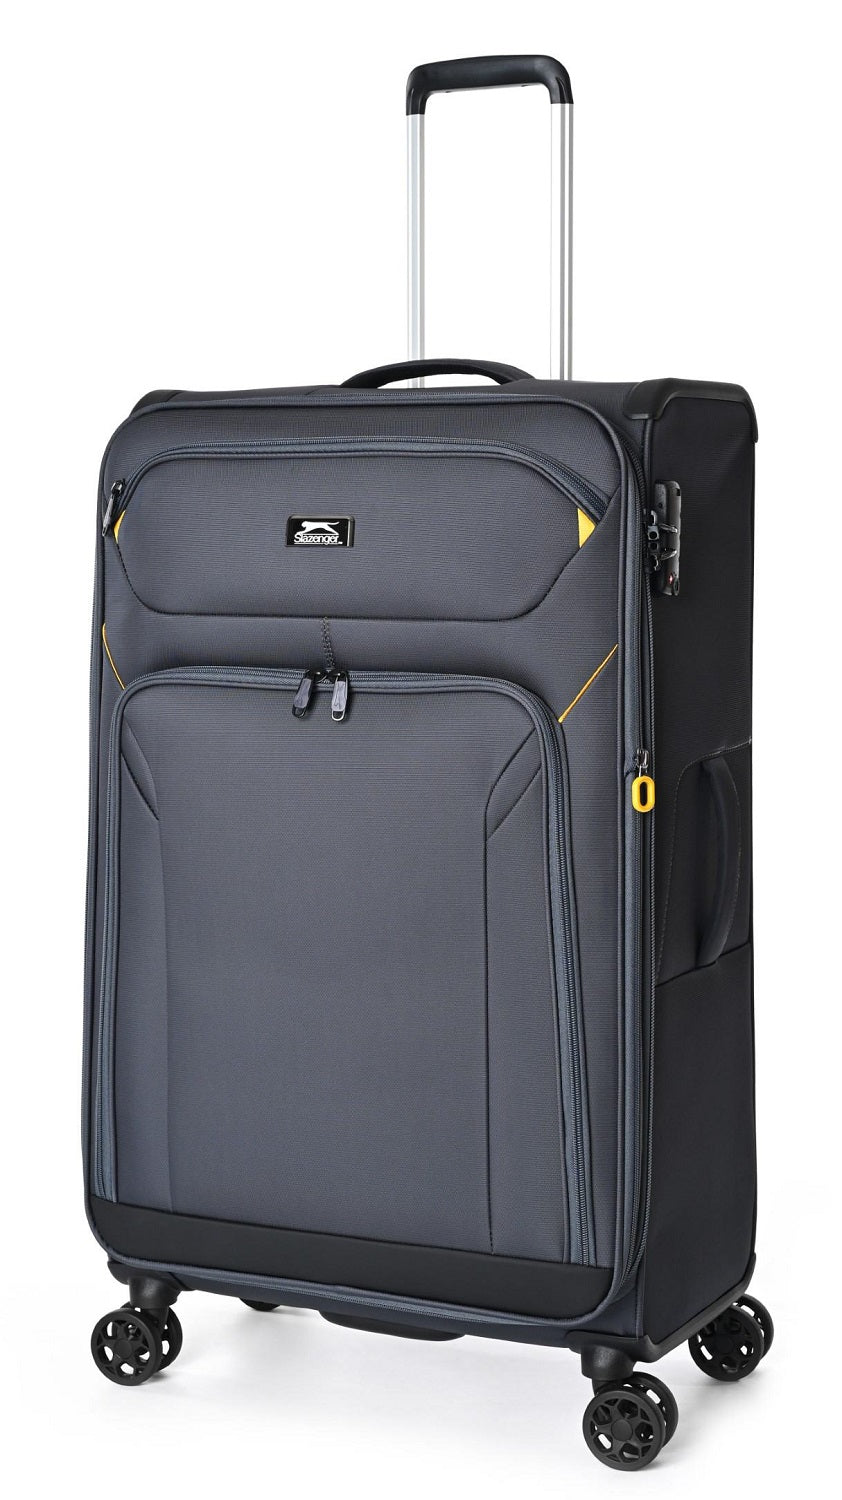 מזוודה בינונית 24"  יוקרתית בד קלה במיוחד מסדרת הפריומיום SLAZENGER דגם New York